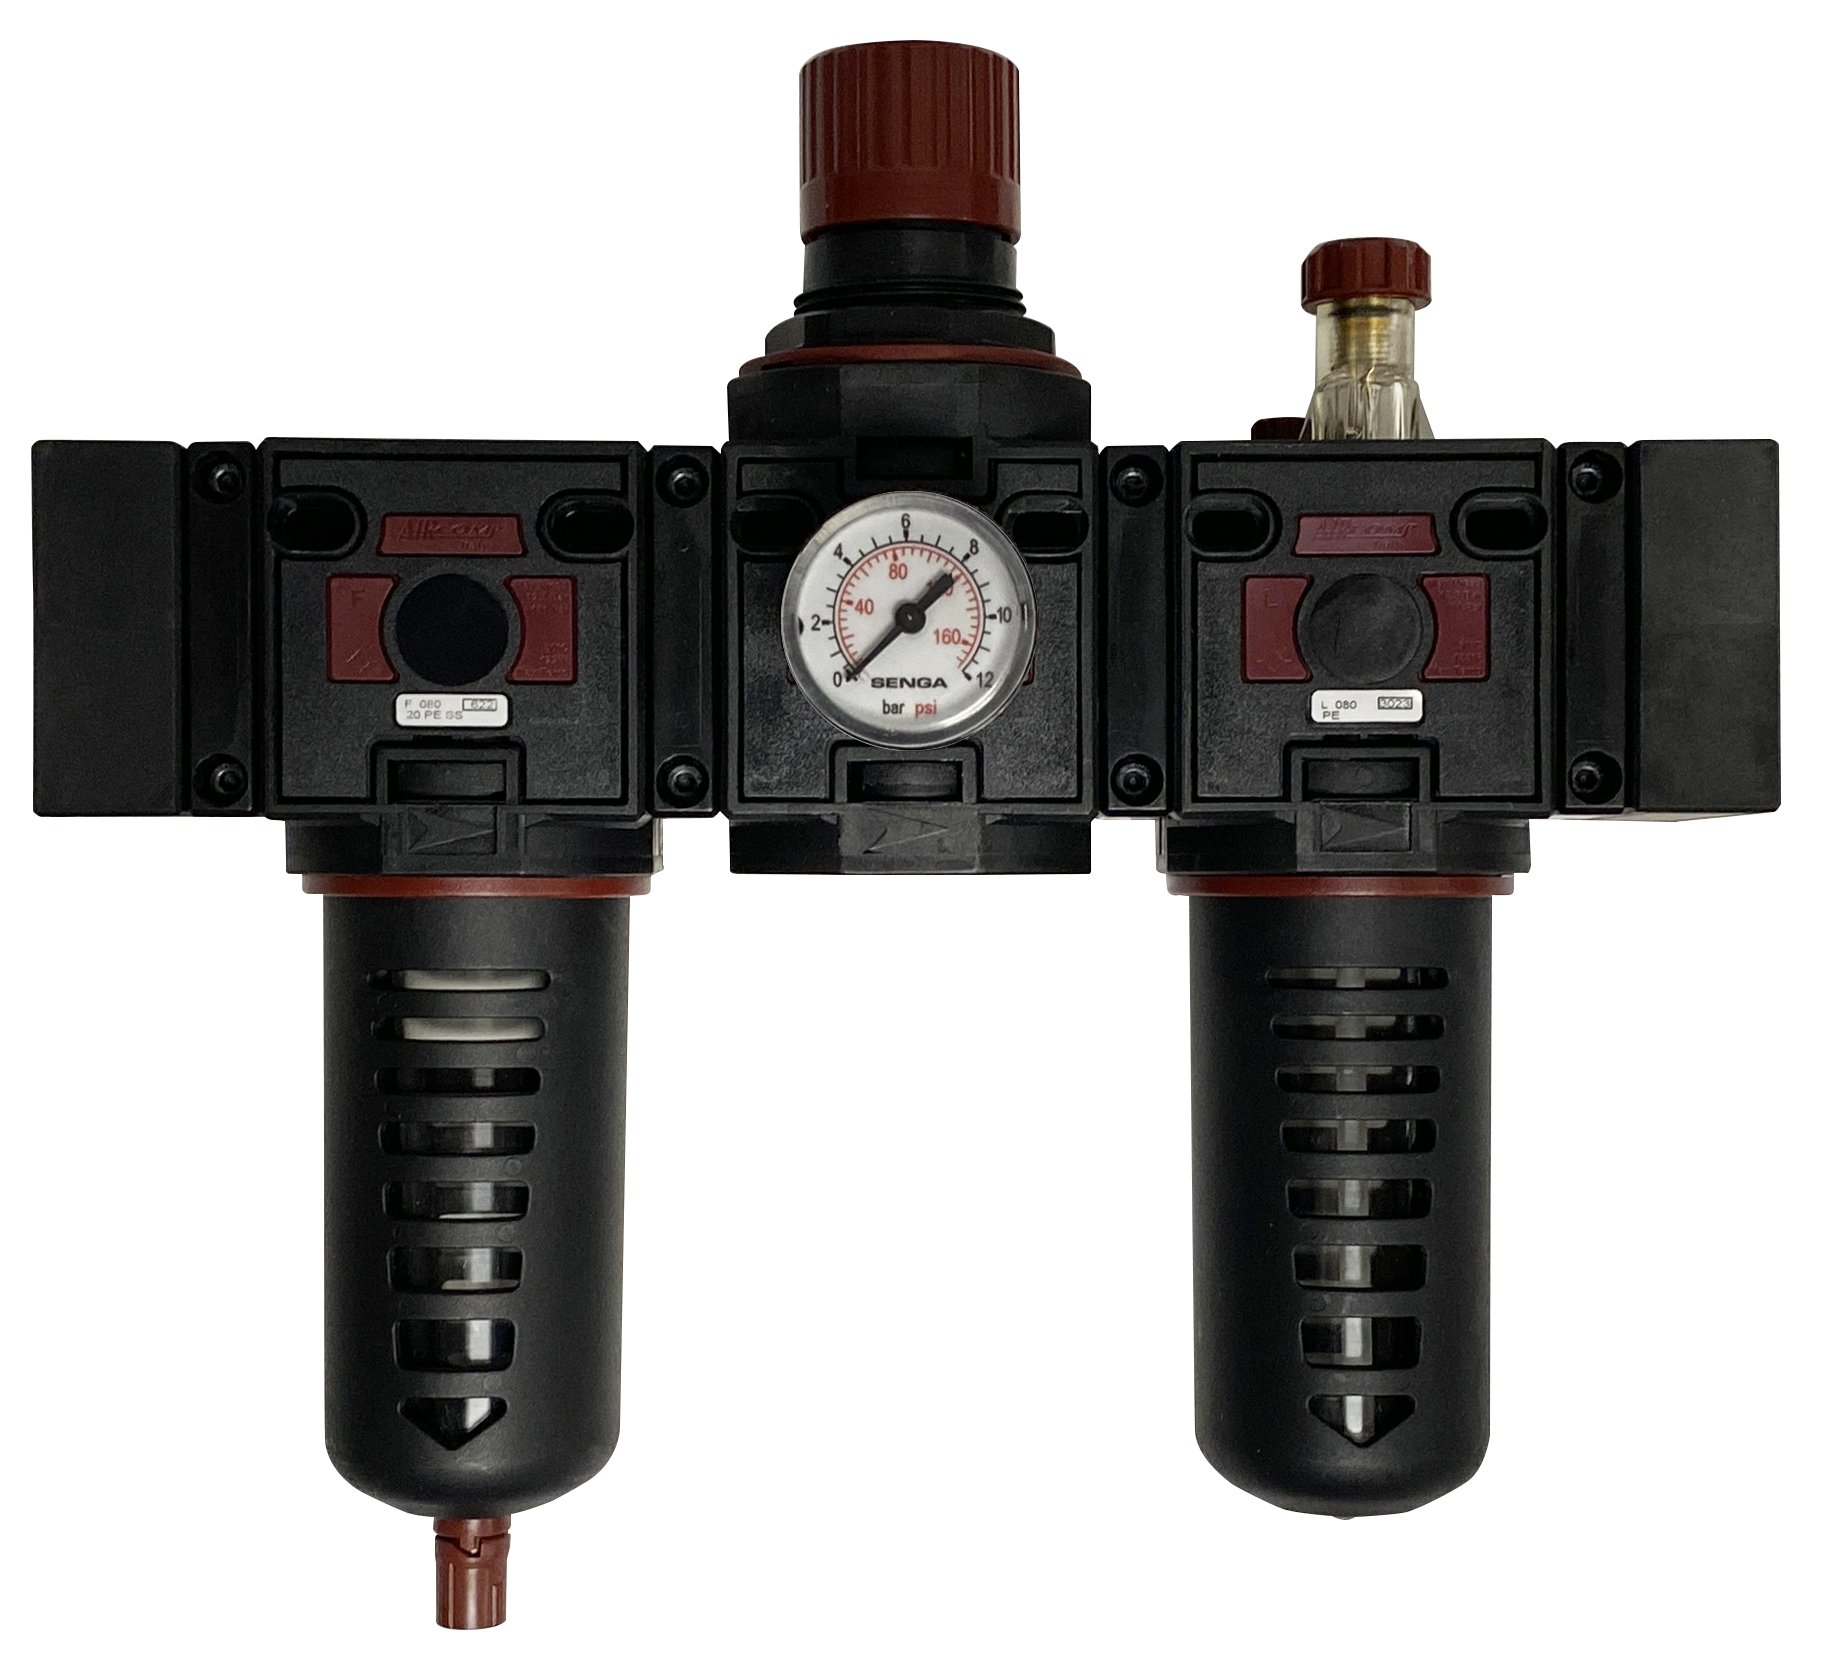 Filtre+Régulateur+Lubrificateur avec manomètre 0-8 bar G3/4'' pour air comprimé